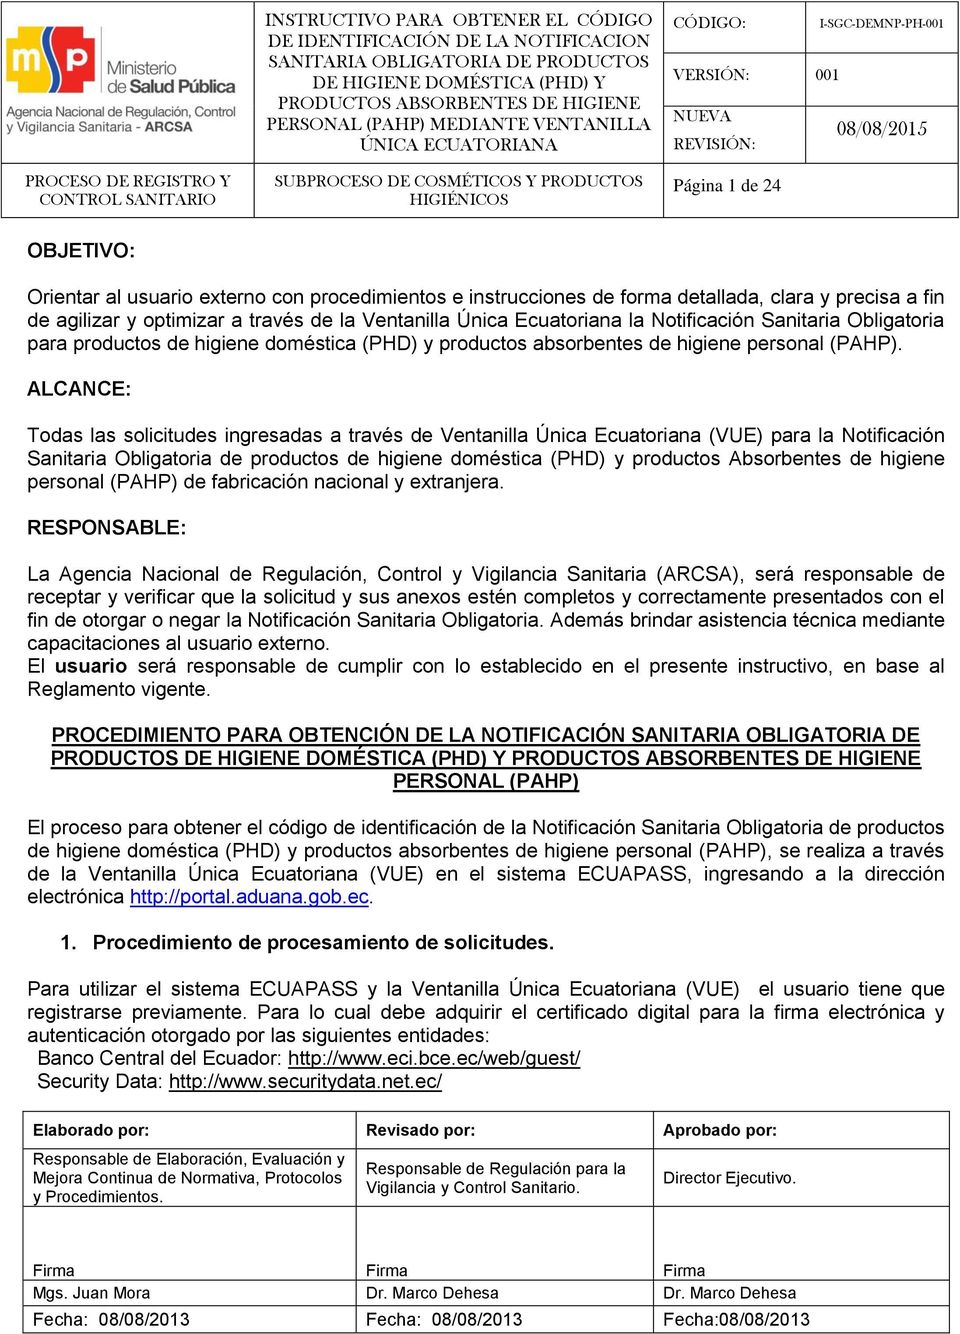 ALCANCE: Todas las solicitudes ingresadas a través de Ventanilla Única Ecuatoriana (VUE) para la Notificación Sanitaria Obligatoria de productos de higiene doméstica (PHD) y productos Absorbentes de